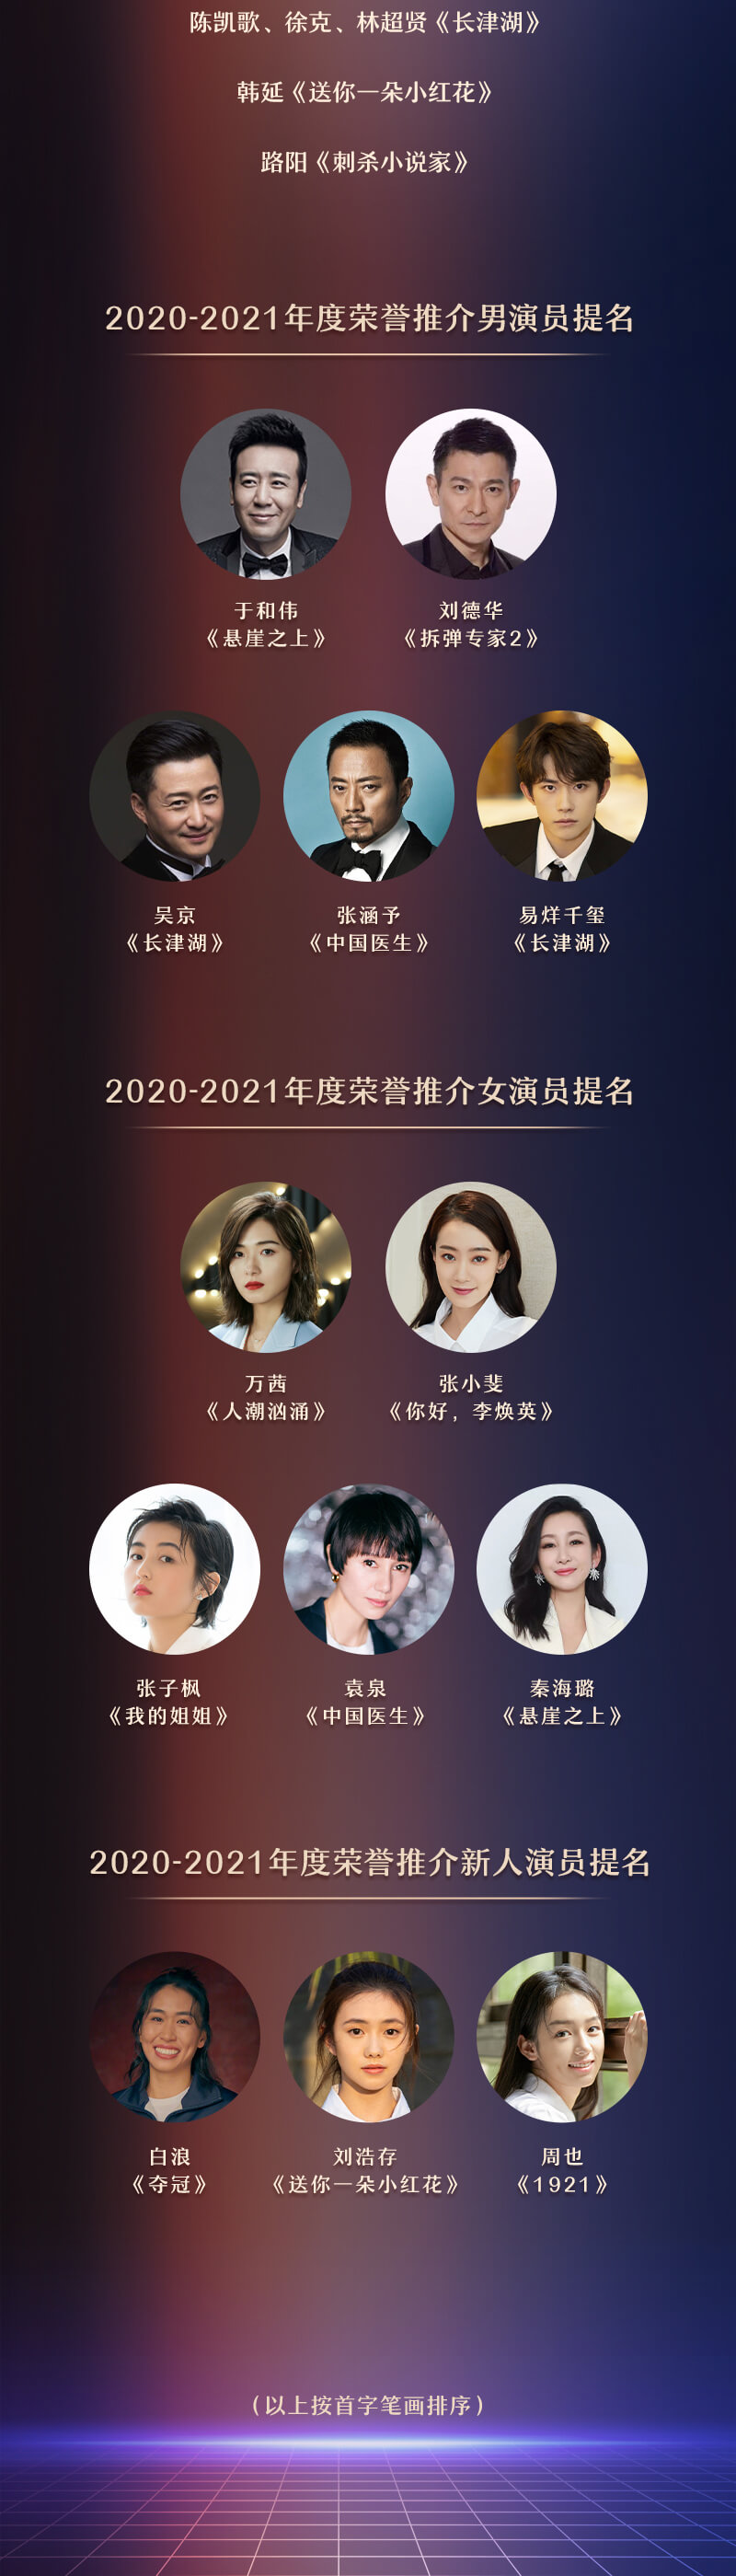 第二届“光影中国”荣誉盛典将在京举办